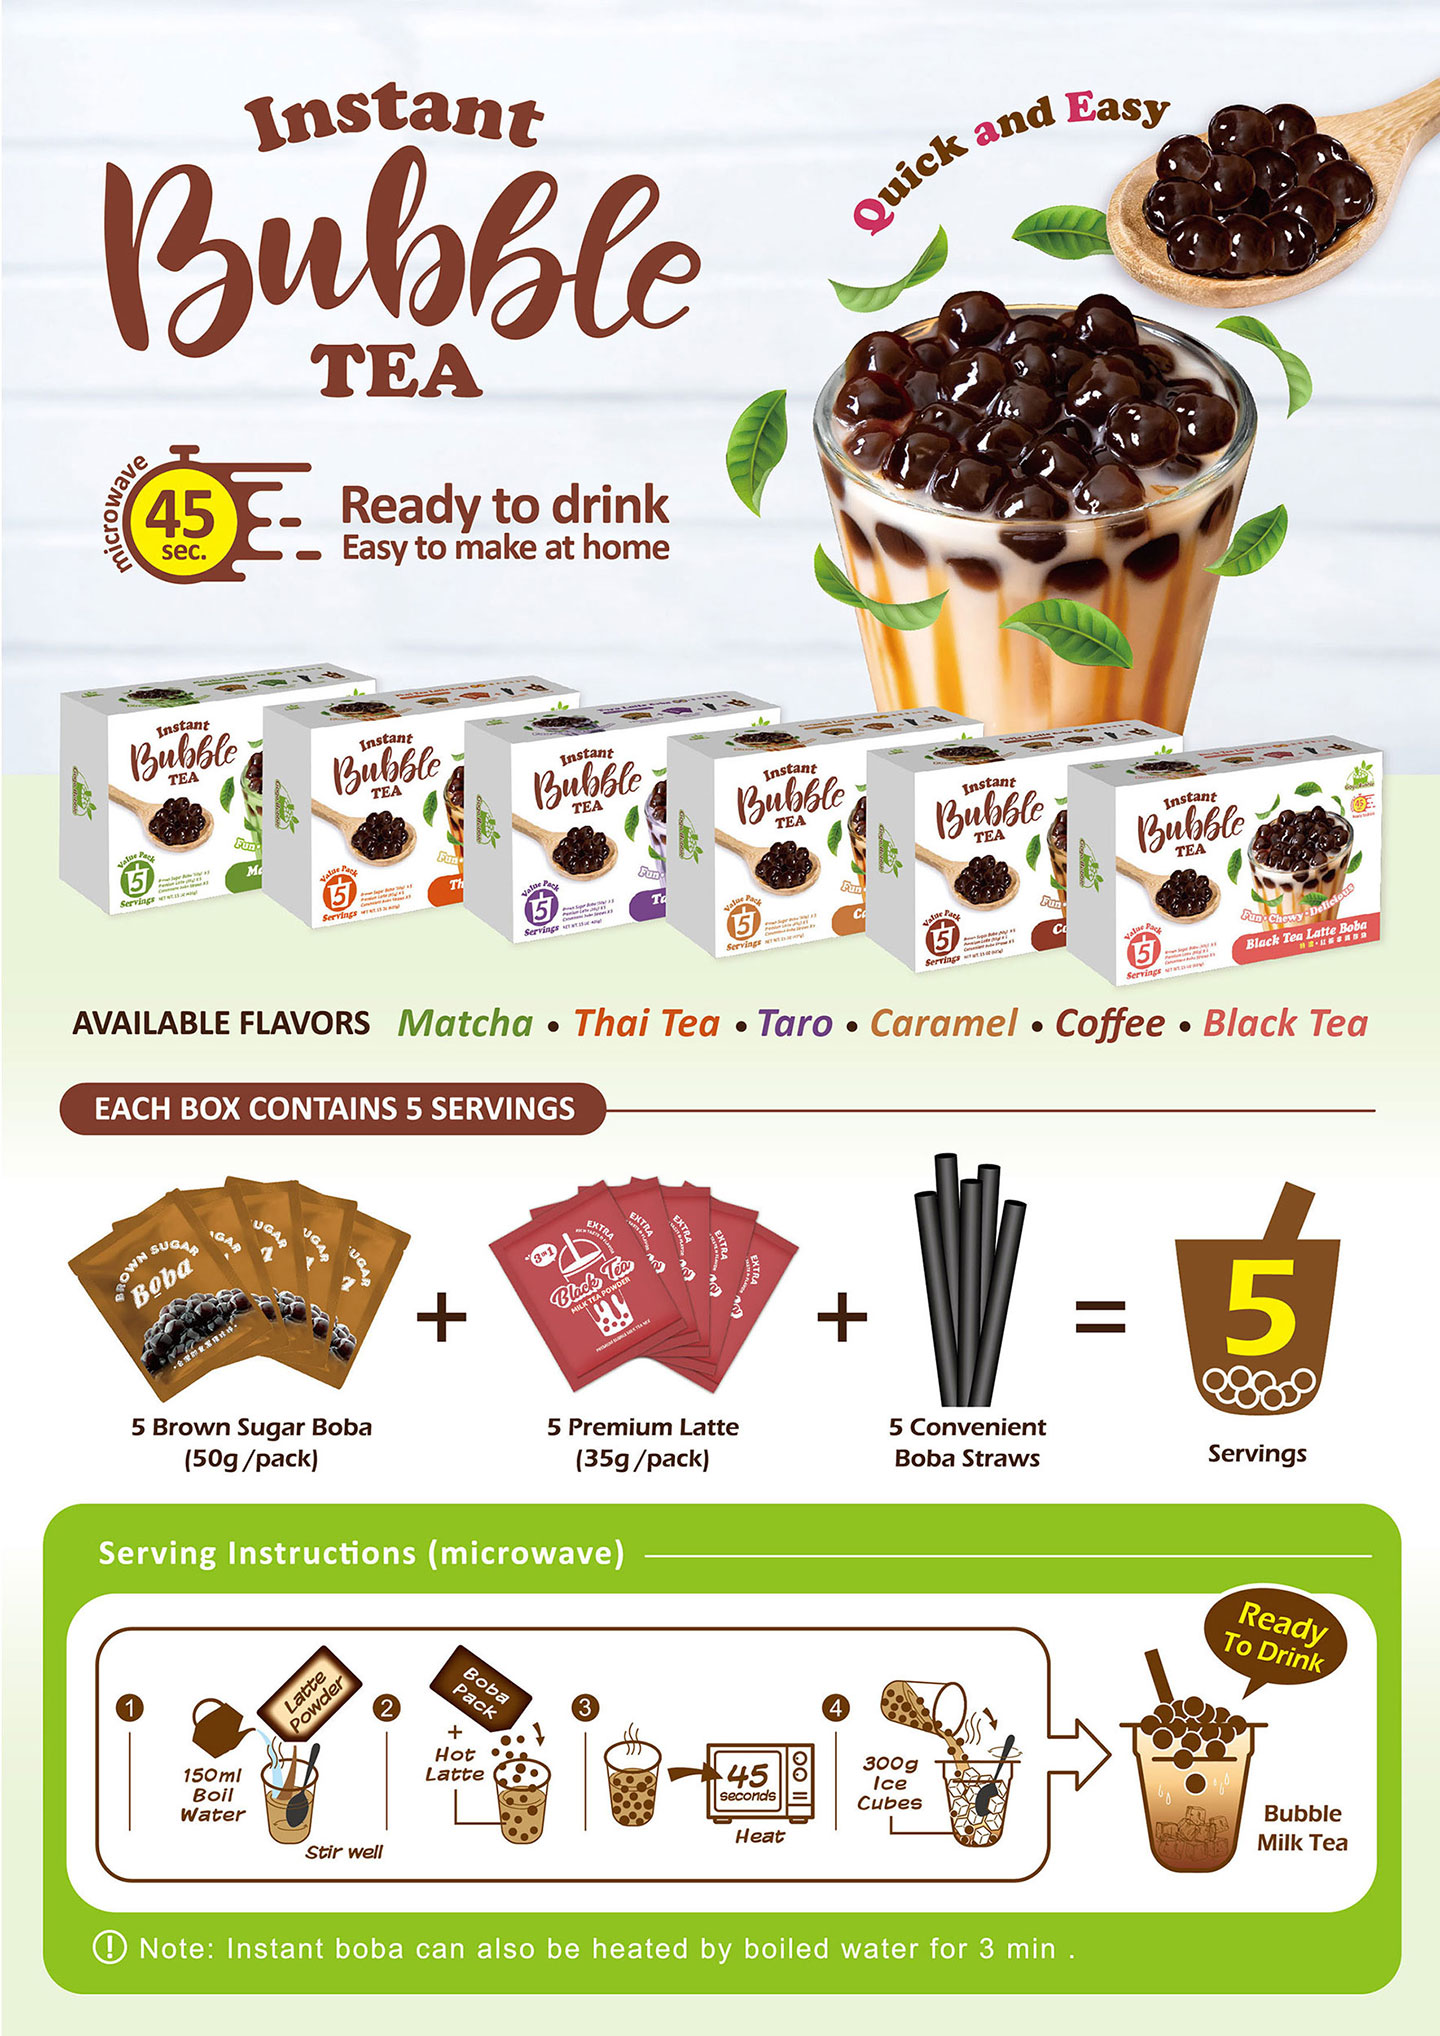 Taro Latte Boba Tea Kit Gift Set (2 Pack)